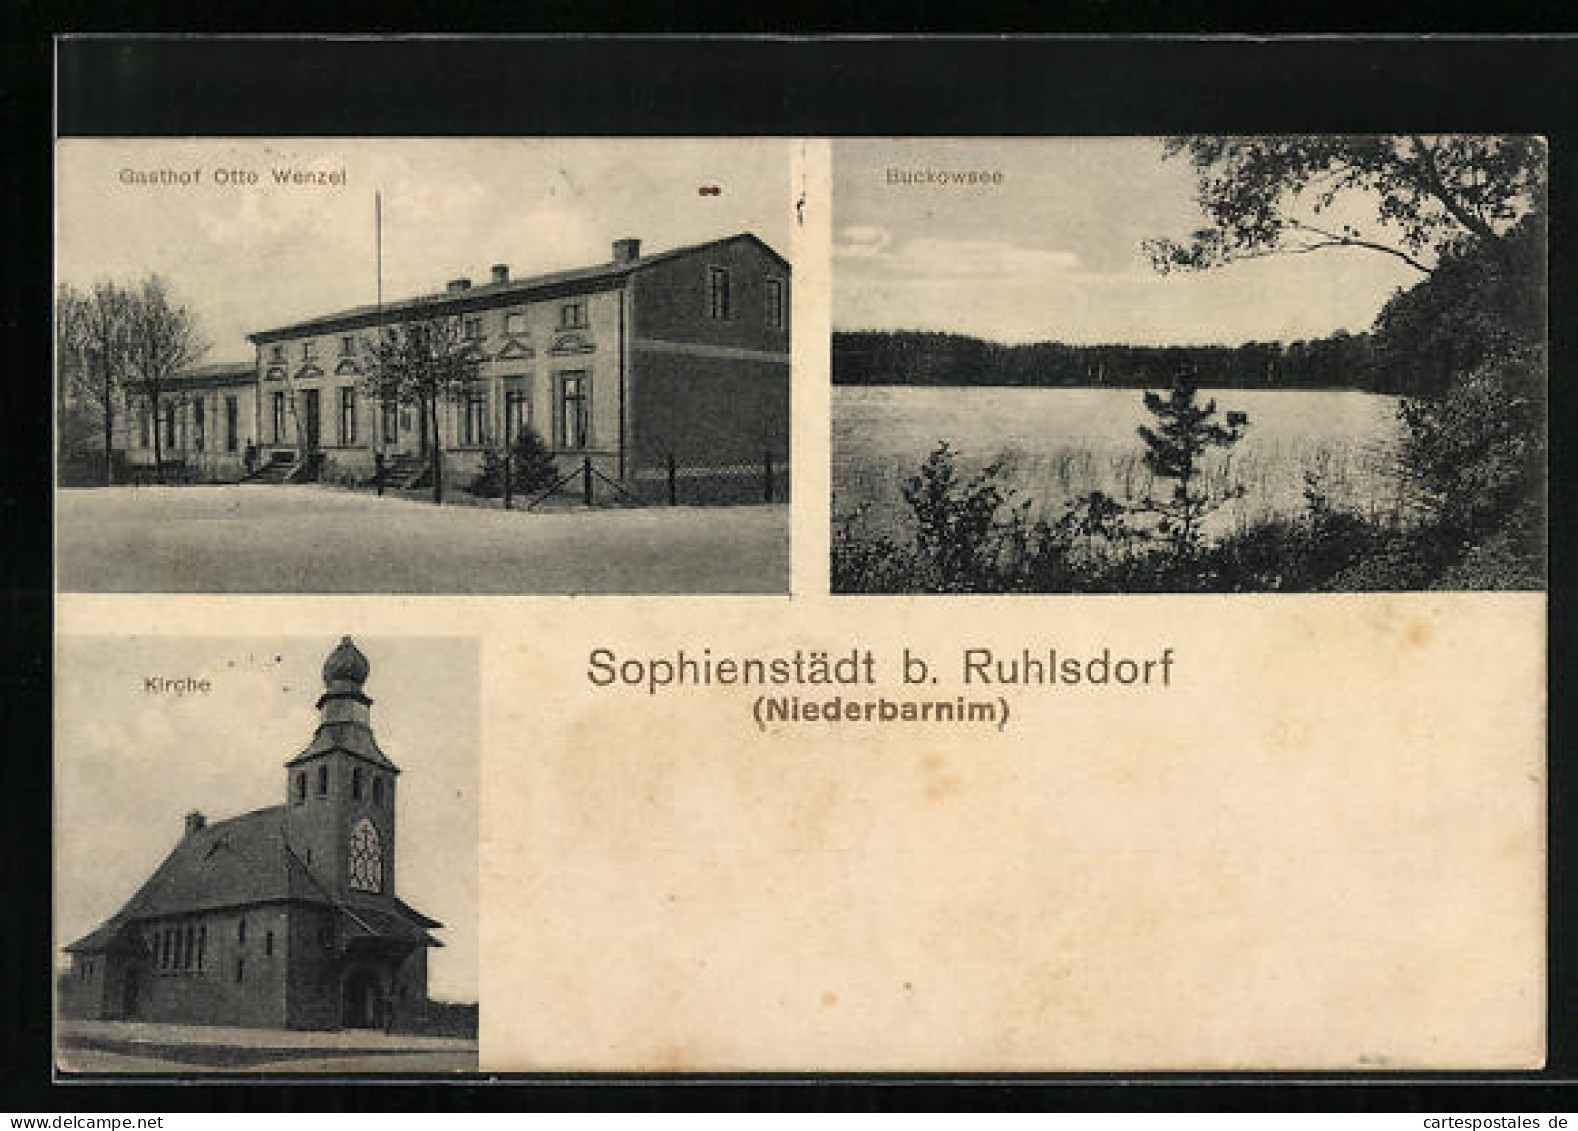 AK Sophienstädt B. Ruhlsdorf /Niederbarnim, Gasthof Otto Wenzel, Kirche, Buckowsee  - Buckow